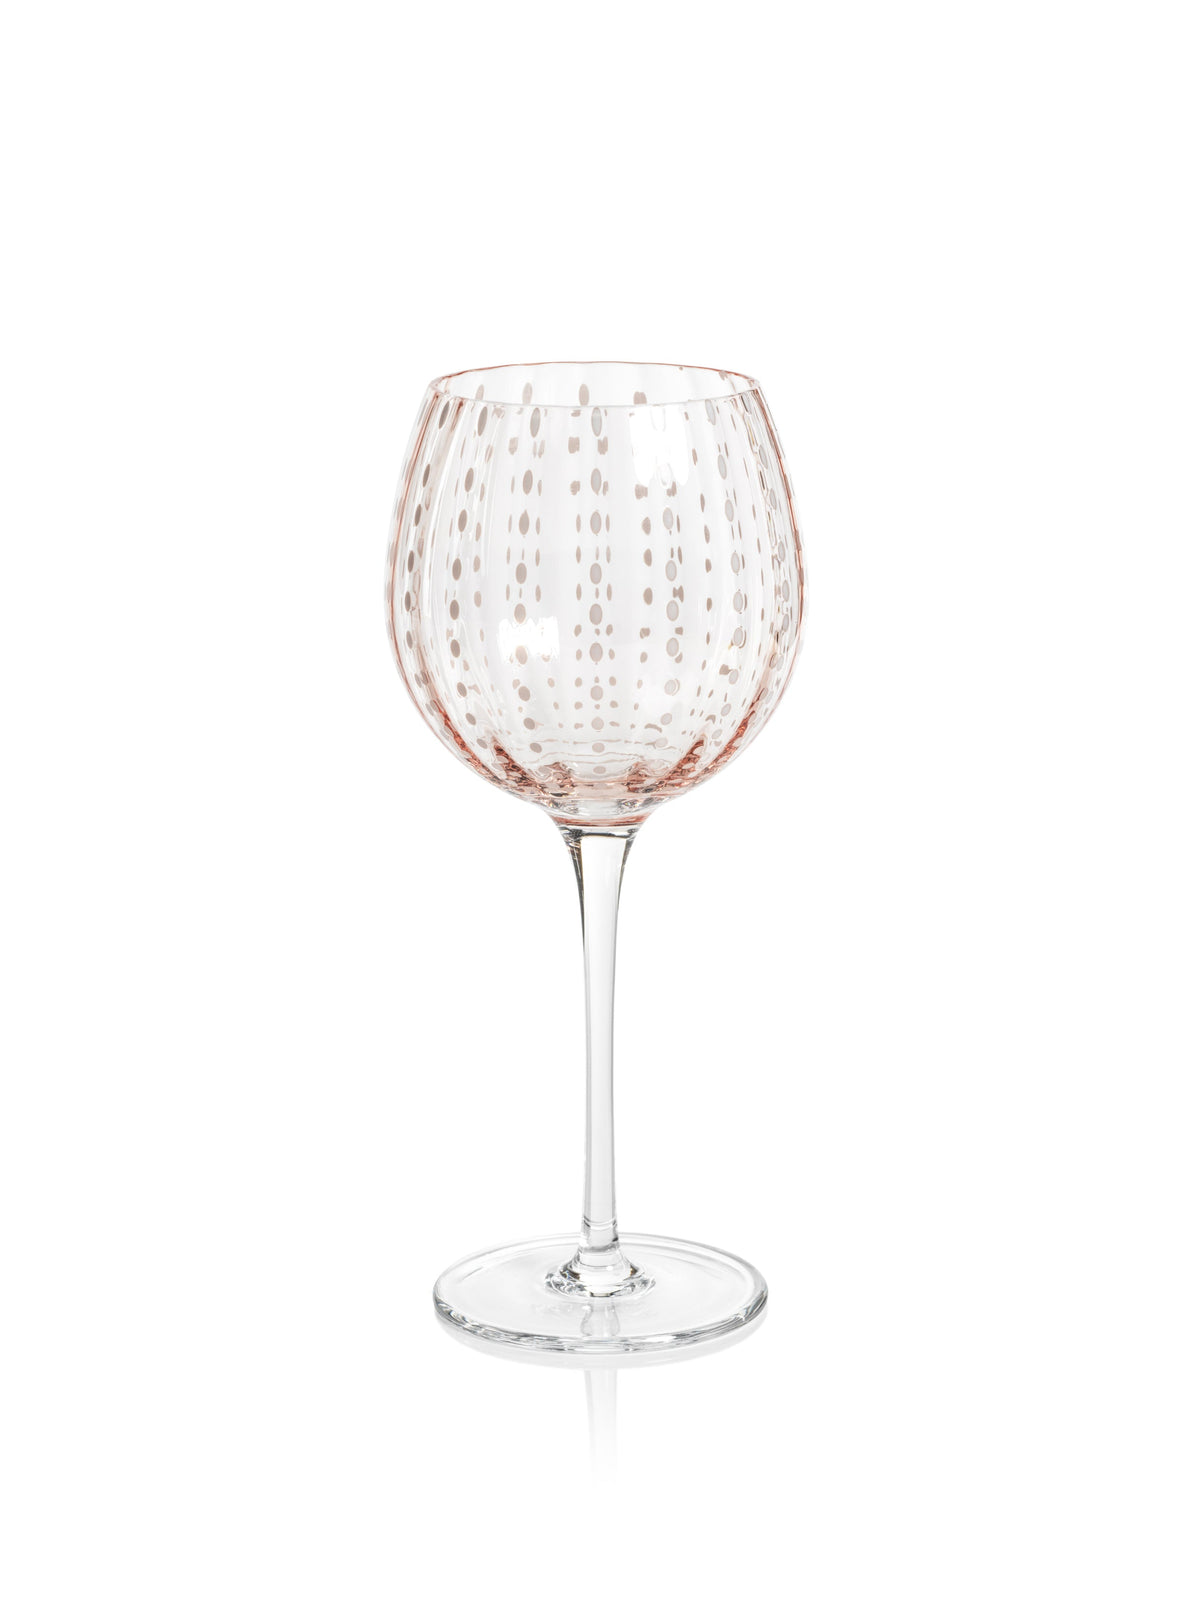 https://shoptheaddison.com/cdn/shop/files/zodax-4-pc-set-portofino-white-dot-wine-glass-pink-41204920254771_1200x1601.jpg?v=1684164847